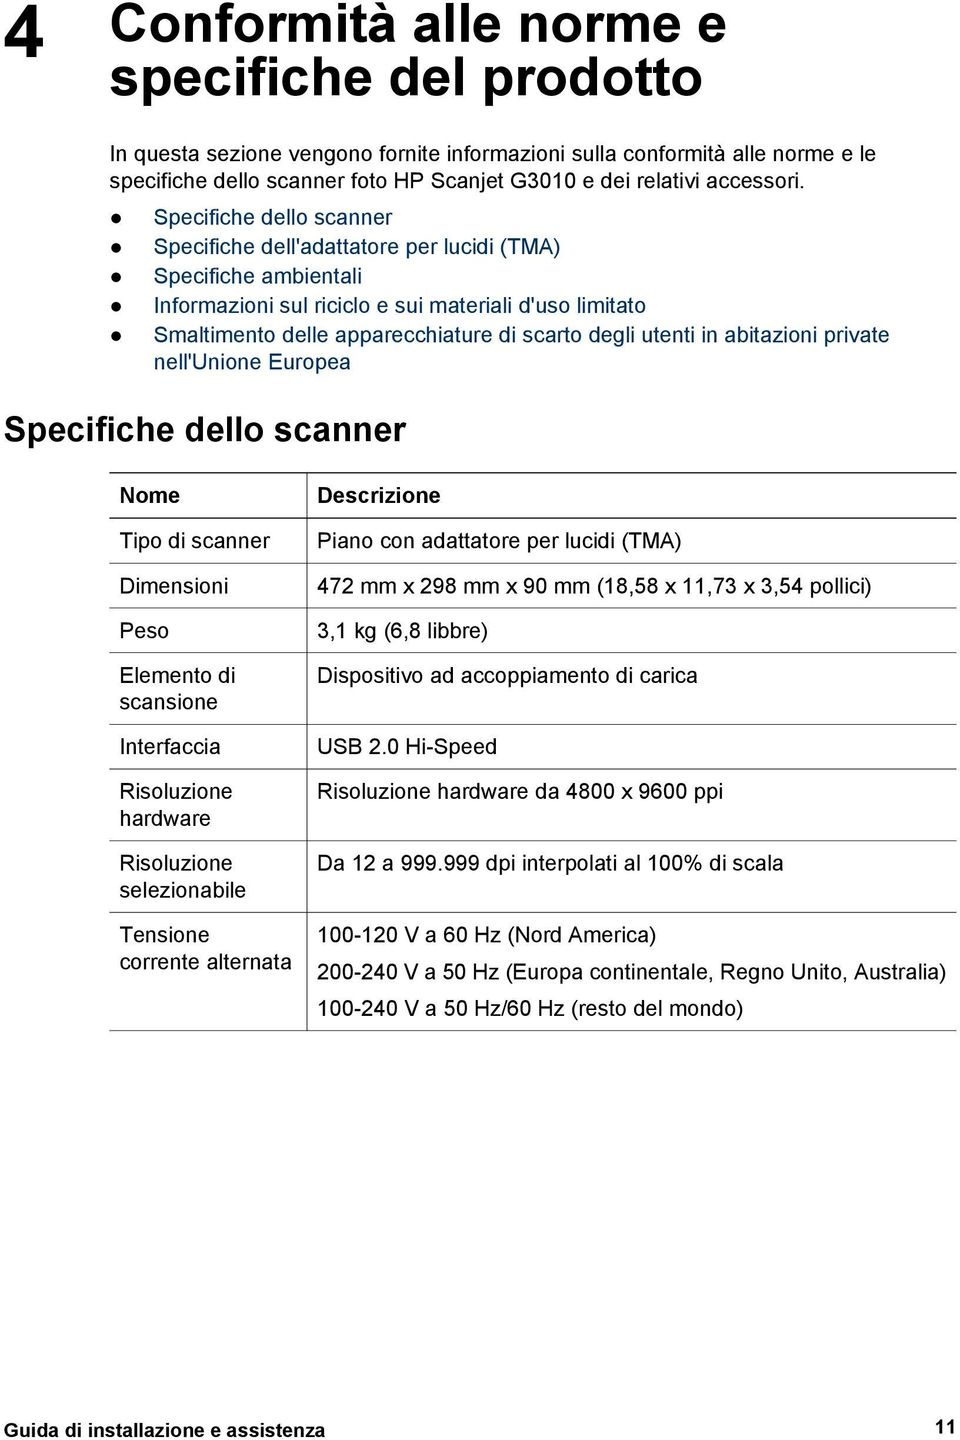 Specifiche dello scanner Specifiche dell'adattatore per lucidi (TMA) Specifiche ambientali Informazioni sul riciclo e sui materiali d'uso limitato Smaltimento delle apparecchiature di scarto degli